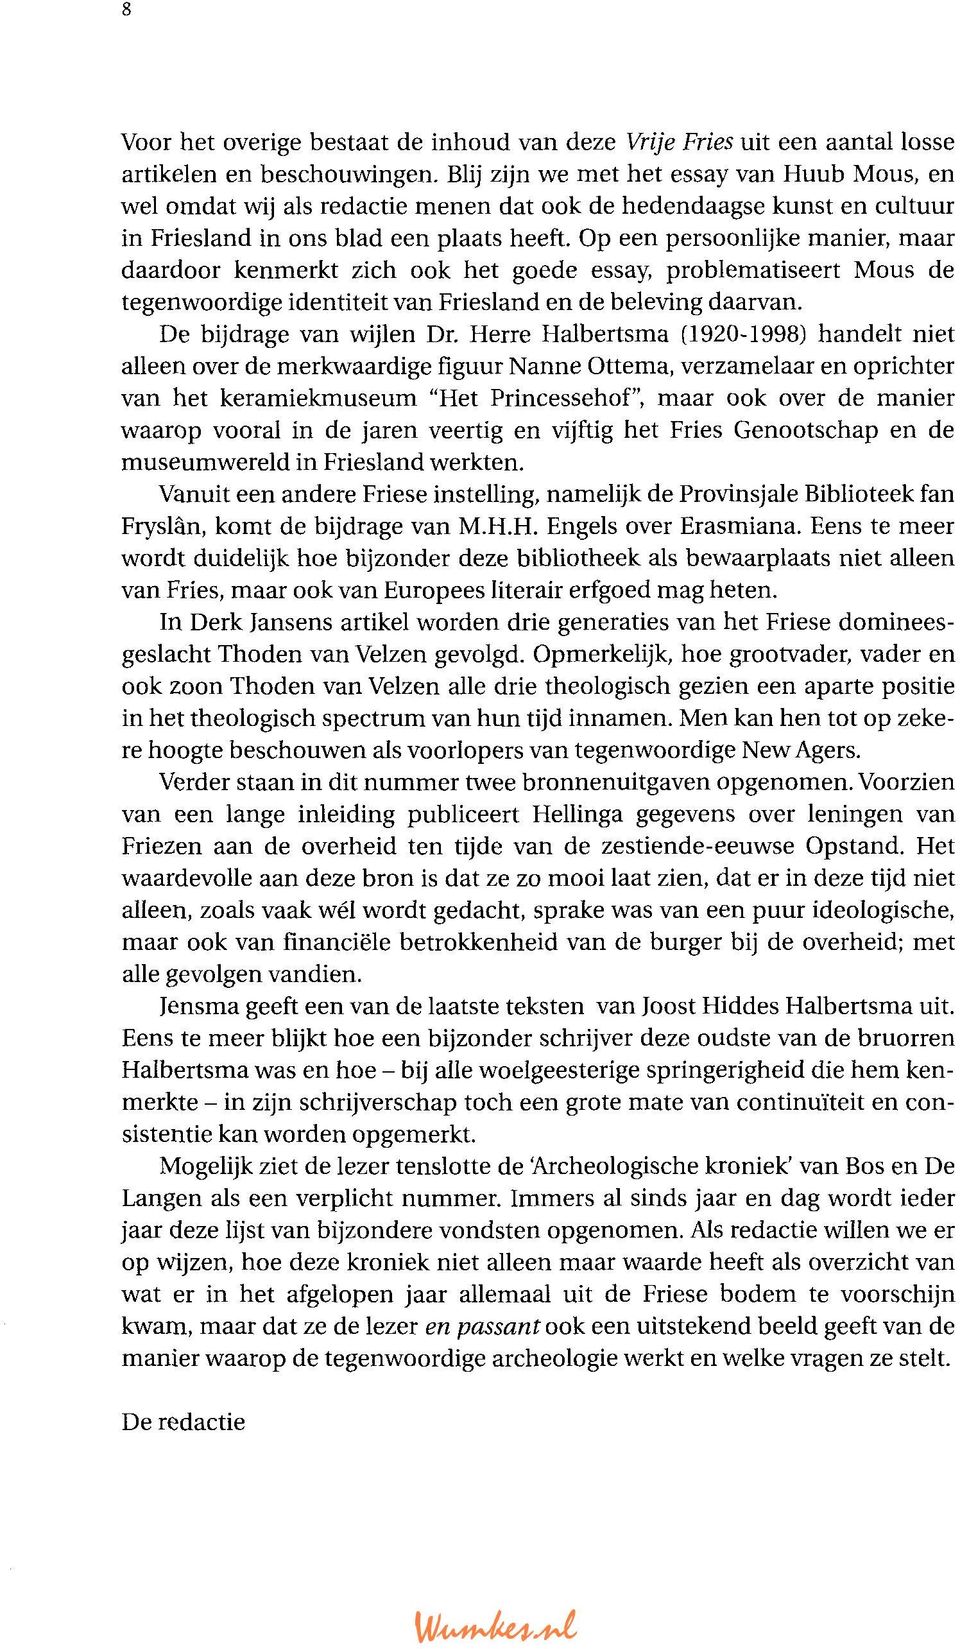 Op een persoonlijke manier, maar daardoor kenmerkt zich ook het goede essay, problematiseert Mous de tegenwoordige identiteit van Friesland en de beleving daarvan. De bijdrage van wijlen Dr.